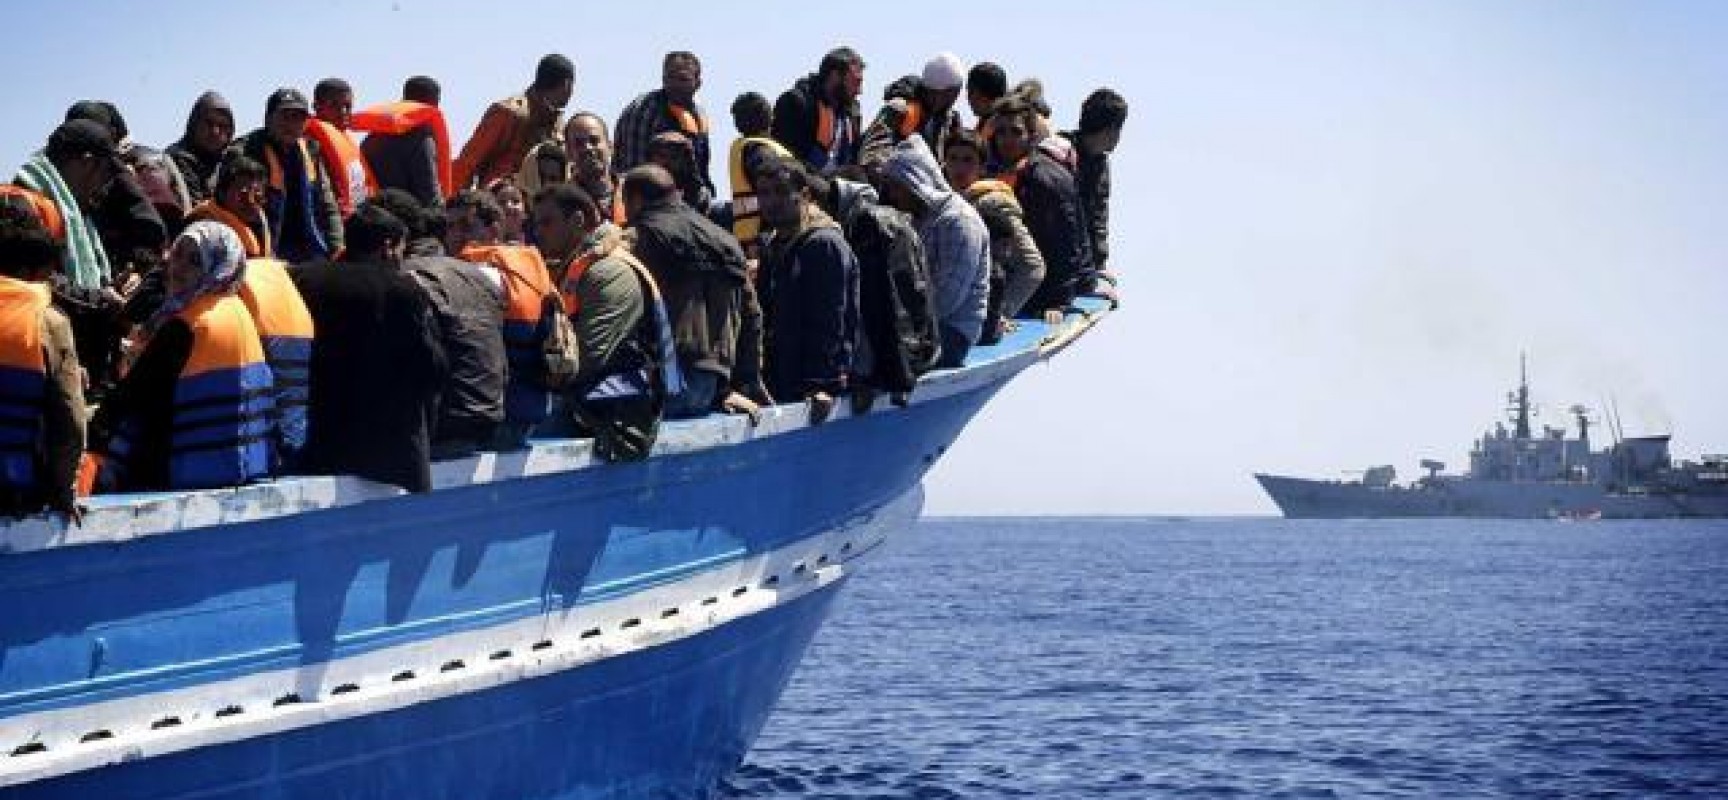 Sardegna, in arrivo altri migranti: Olbia tra i possibili porti di sbarco